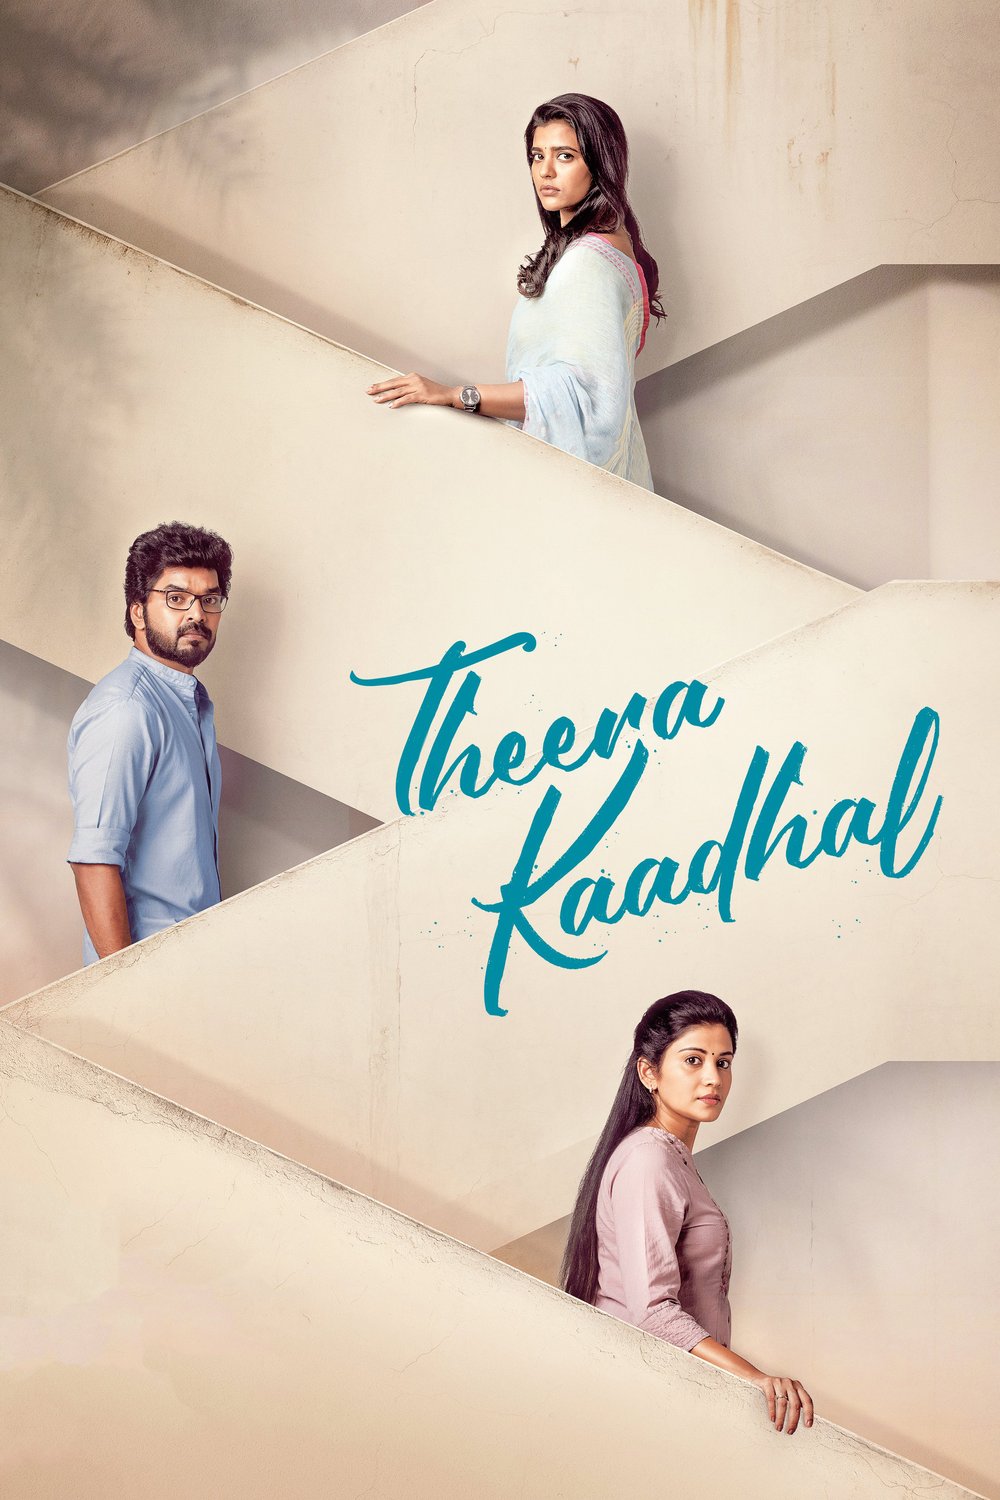 Tamil poster of the movie Theera Kadhal